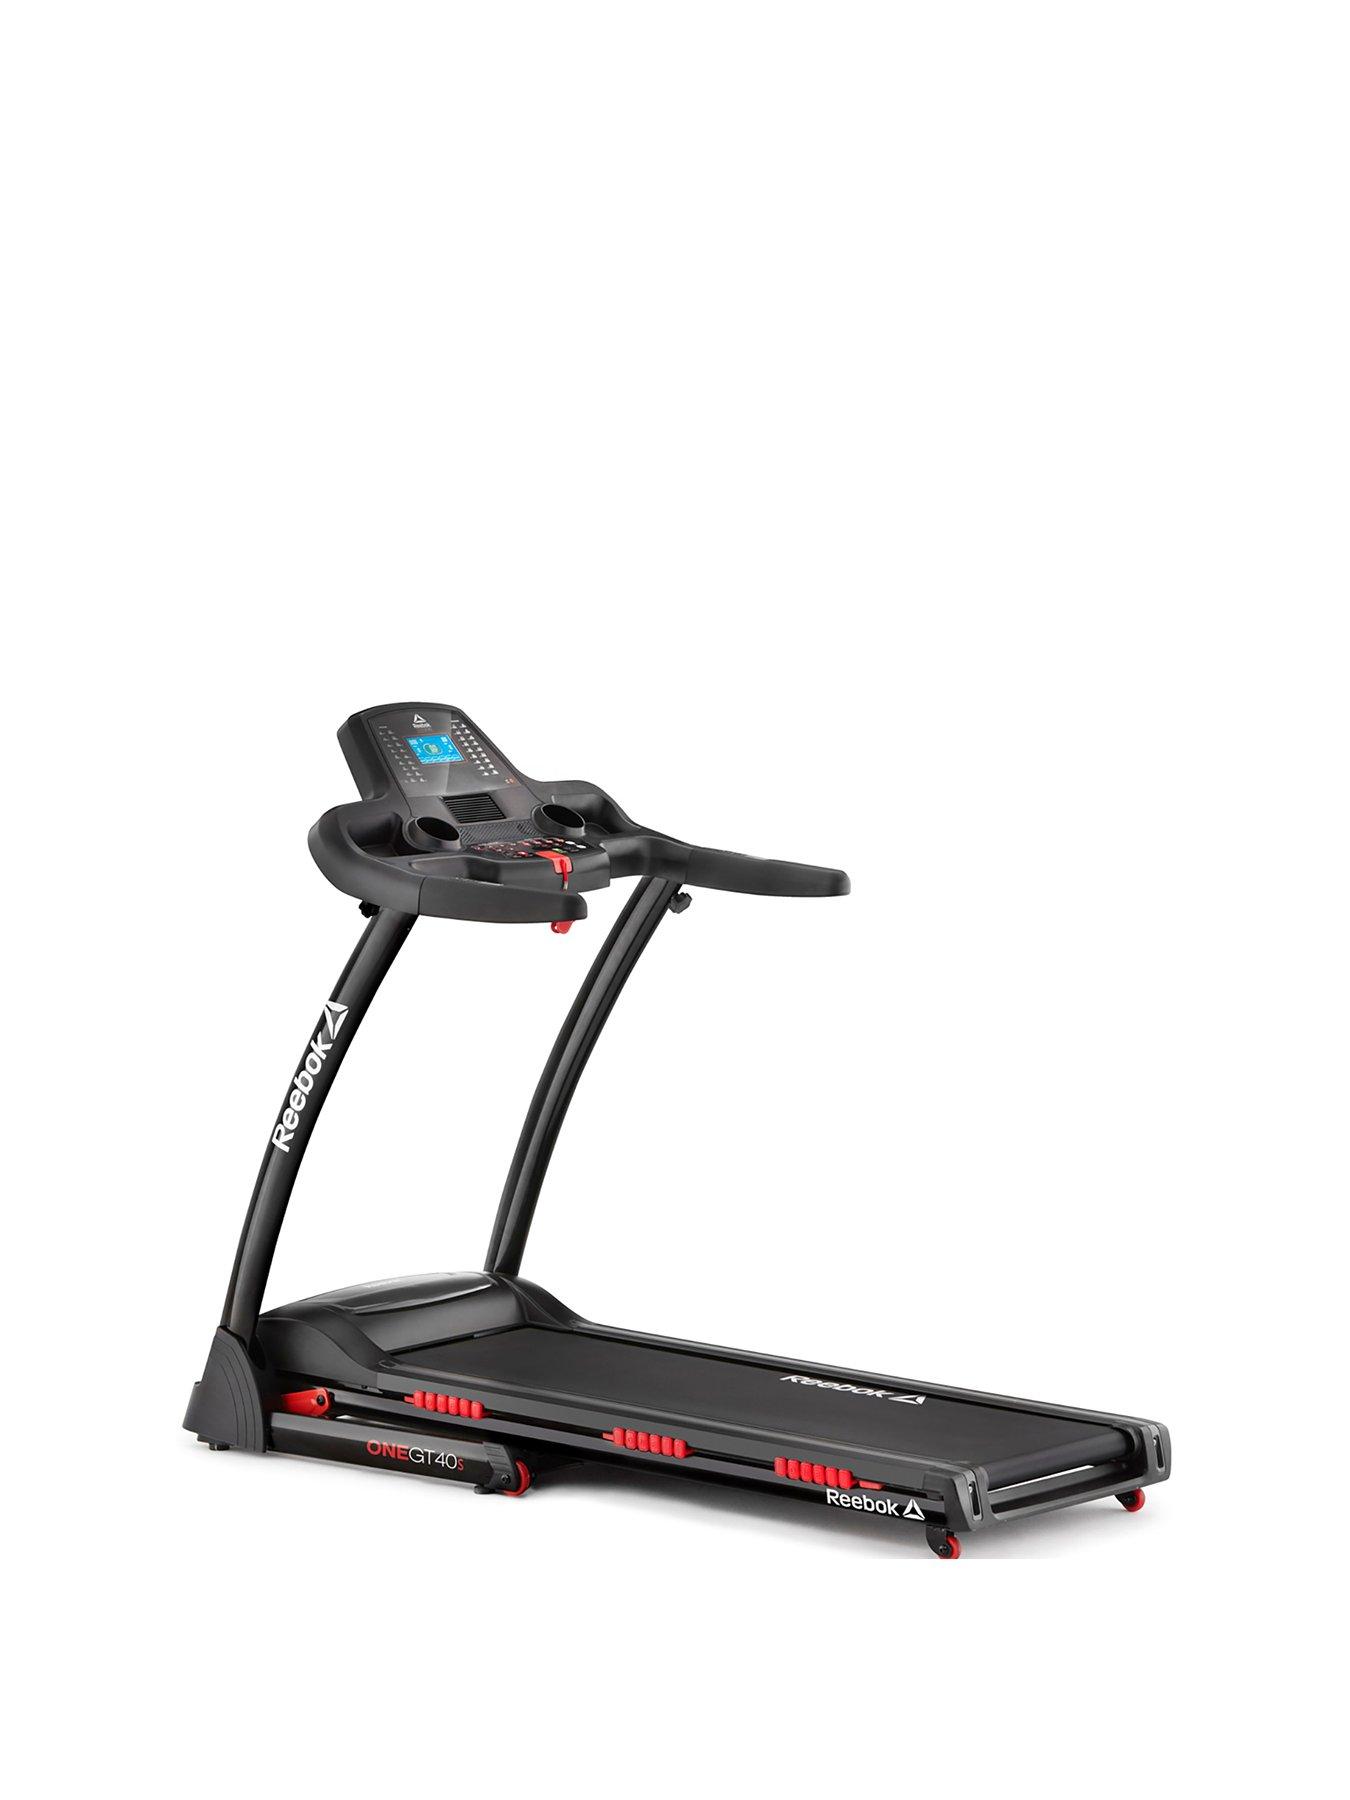 reebok treadmill support